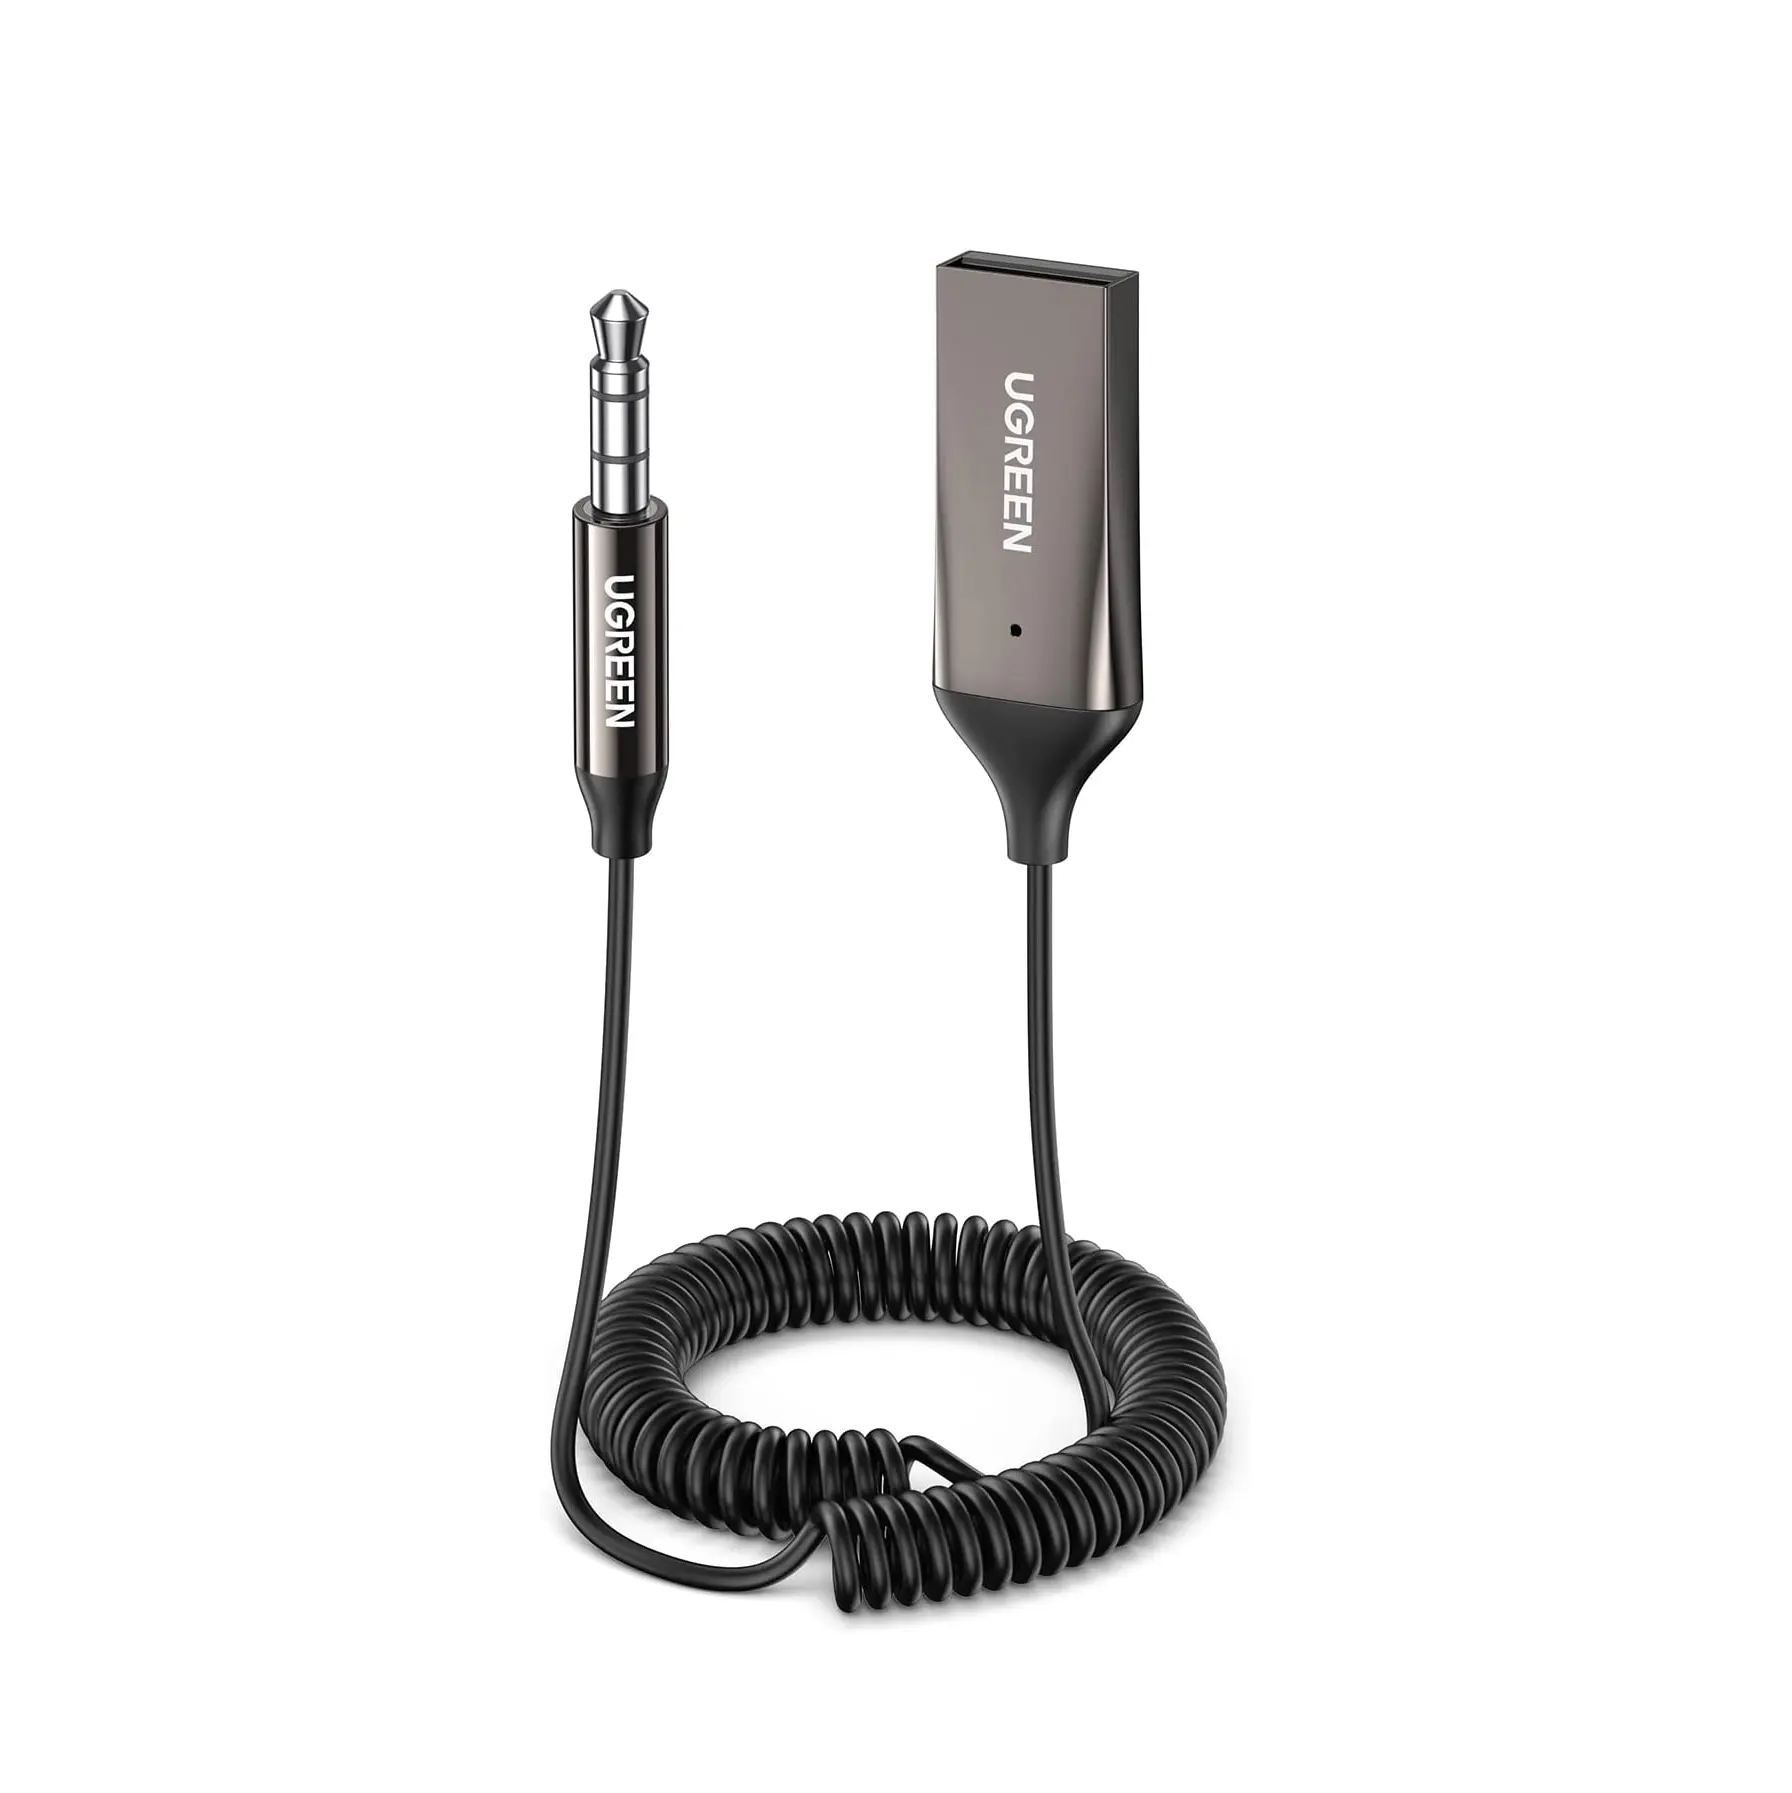 UGREEN-adaptador Aux a Bluetooth 5,0, receptor Bluetooth de 3,5mm para coche, Kit de conector USB 2,0 a Jack de 3,5mm